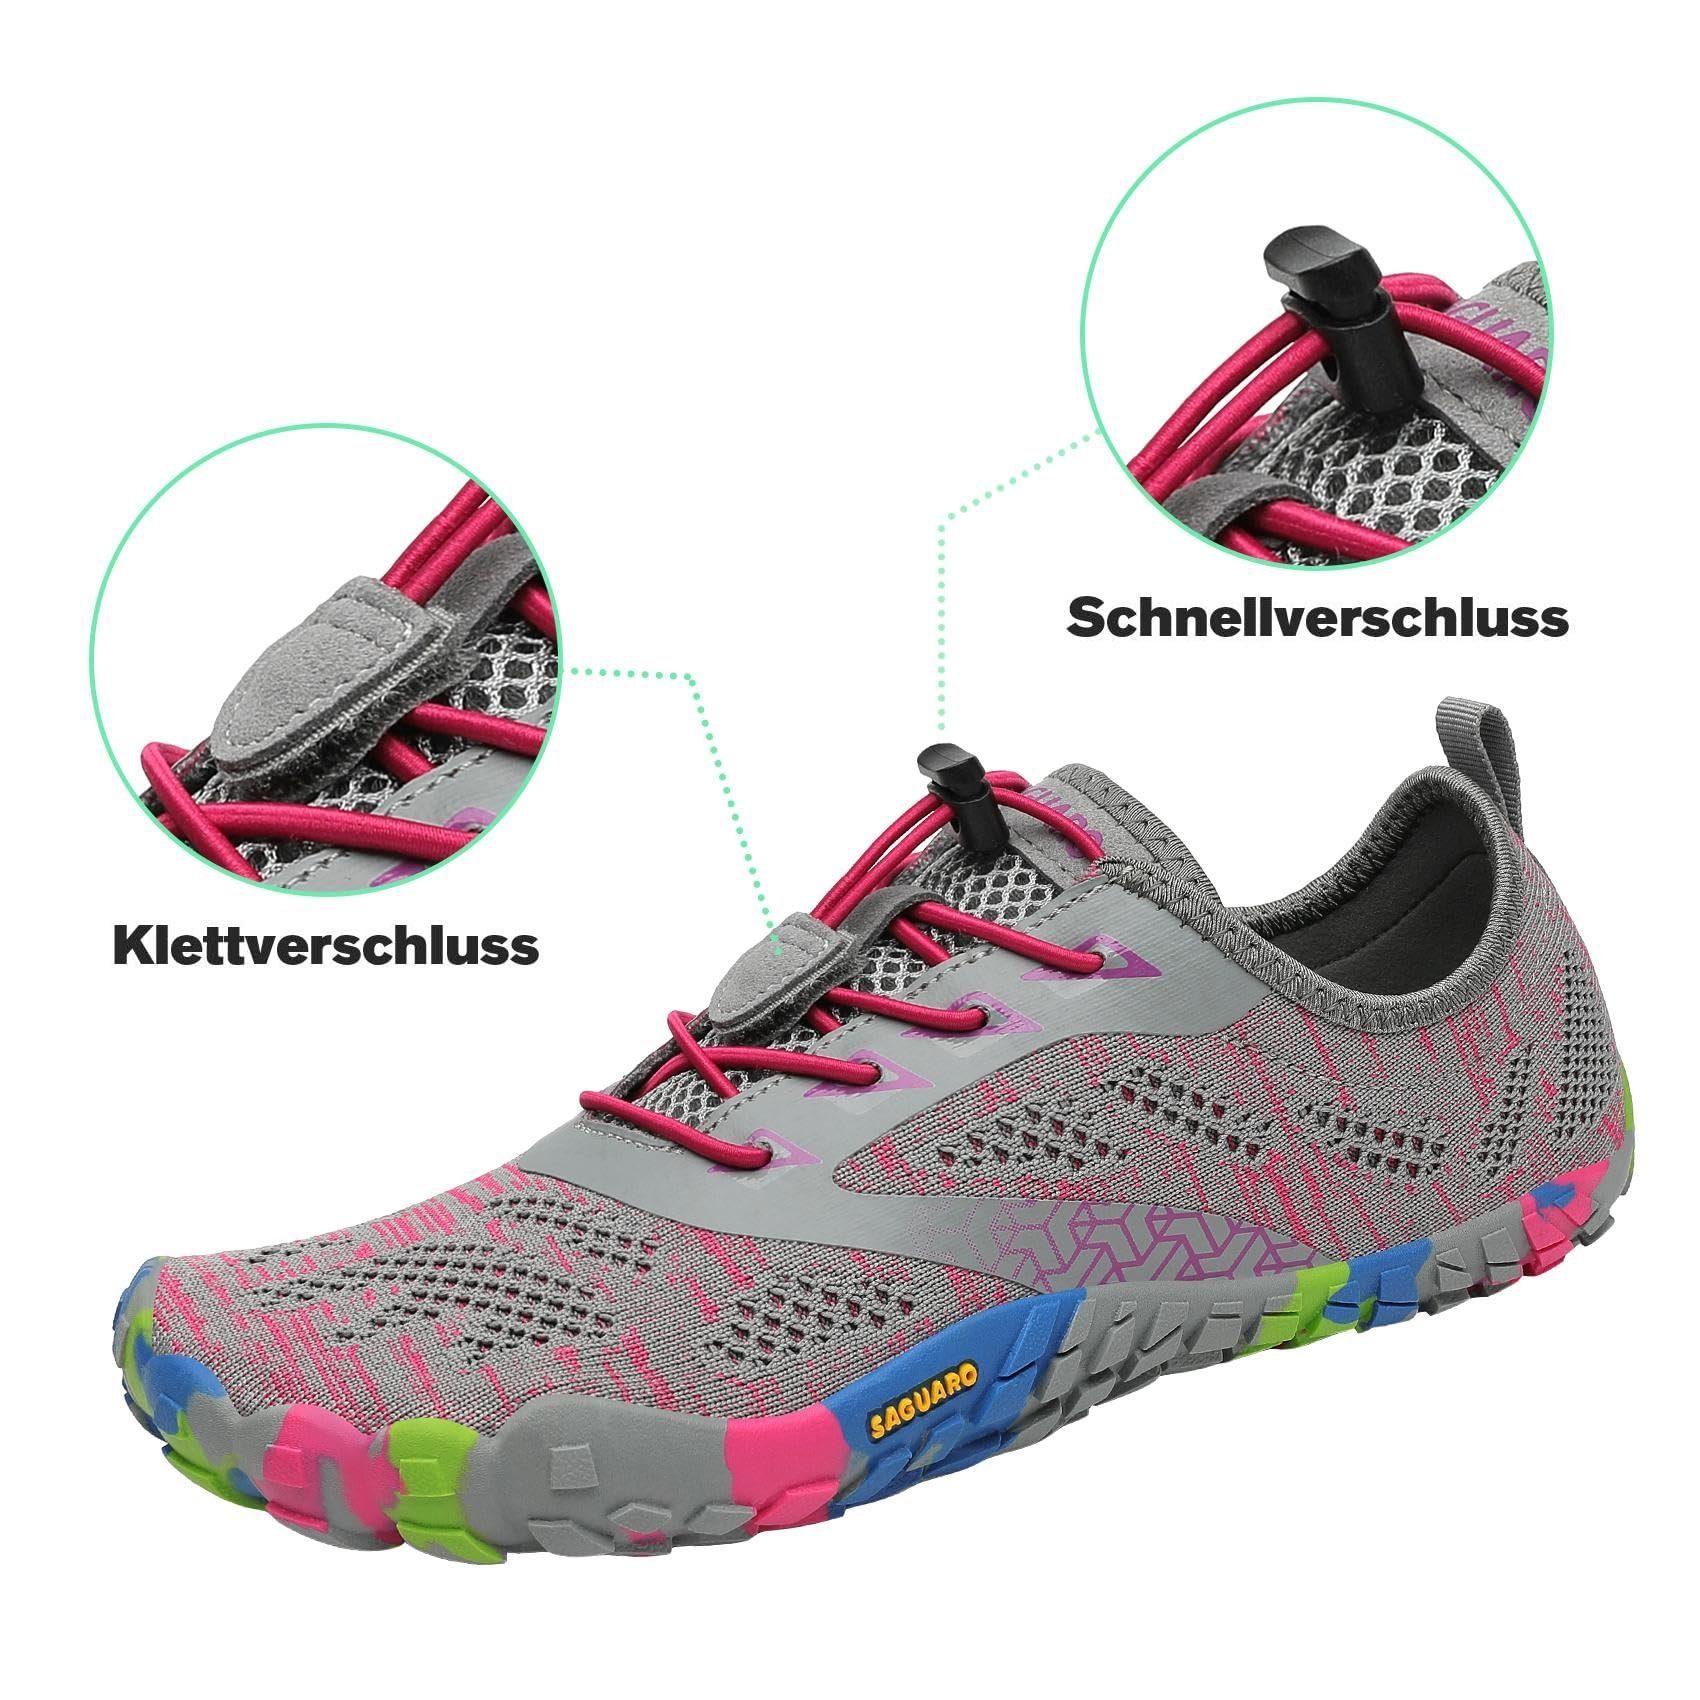 SAGUARO Barfußschuh (bequem, leicht, Jogging Laufschuhe Sport-Schuhe Trail-Running 034 rutschfest) Minimalschuhe Pink atmungsaktiv, Sneaker